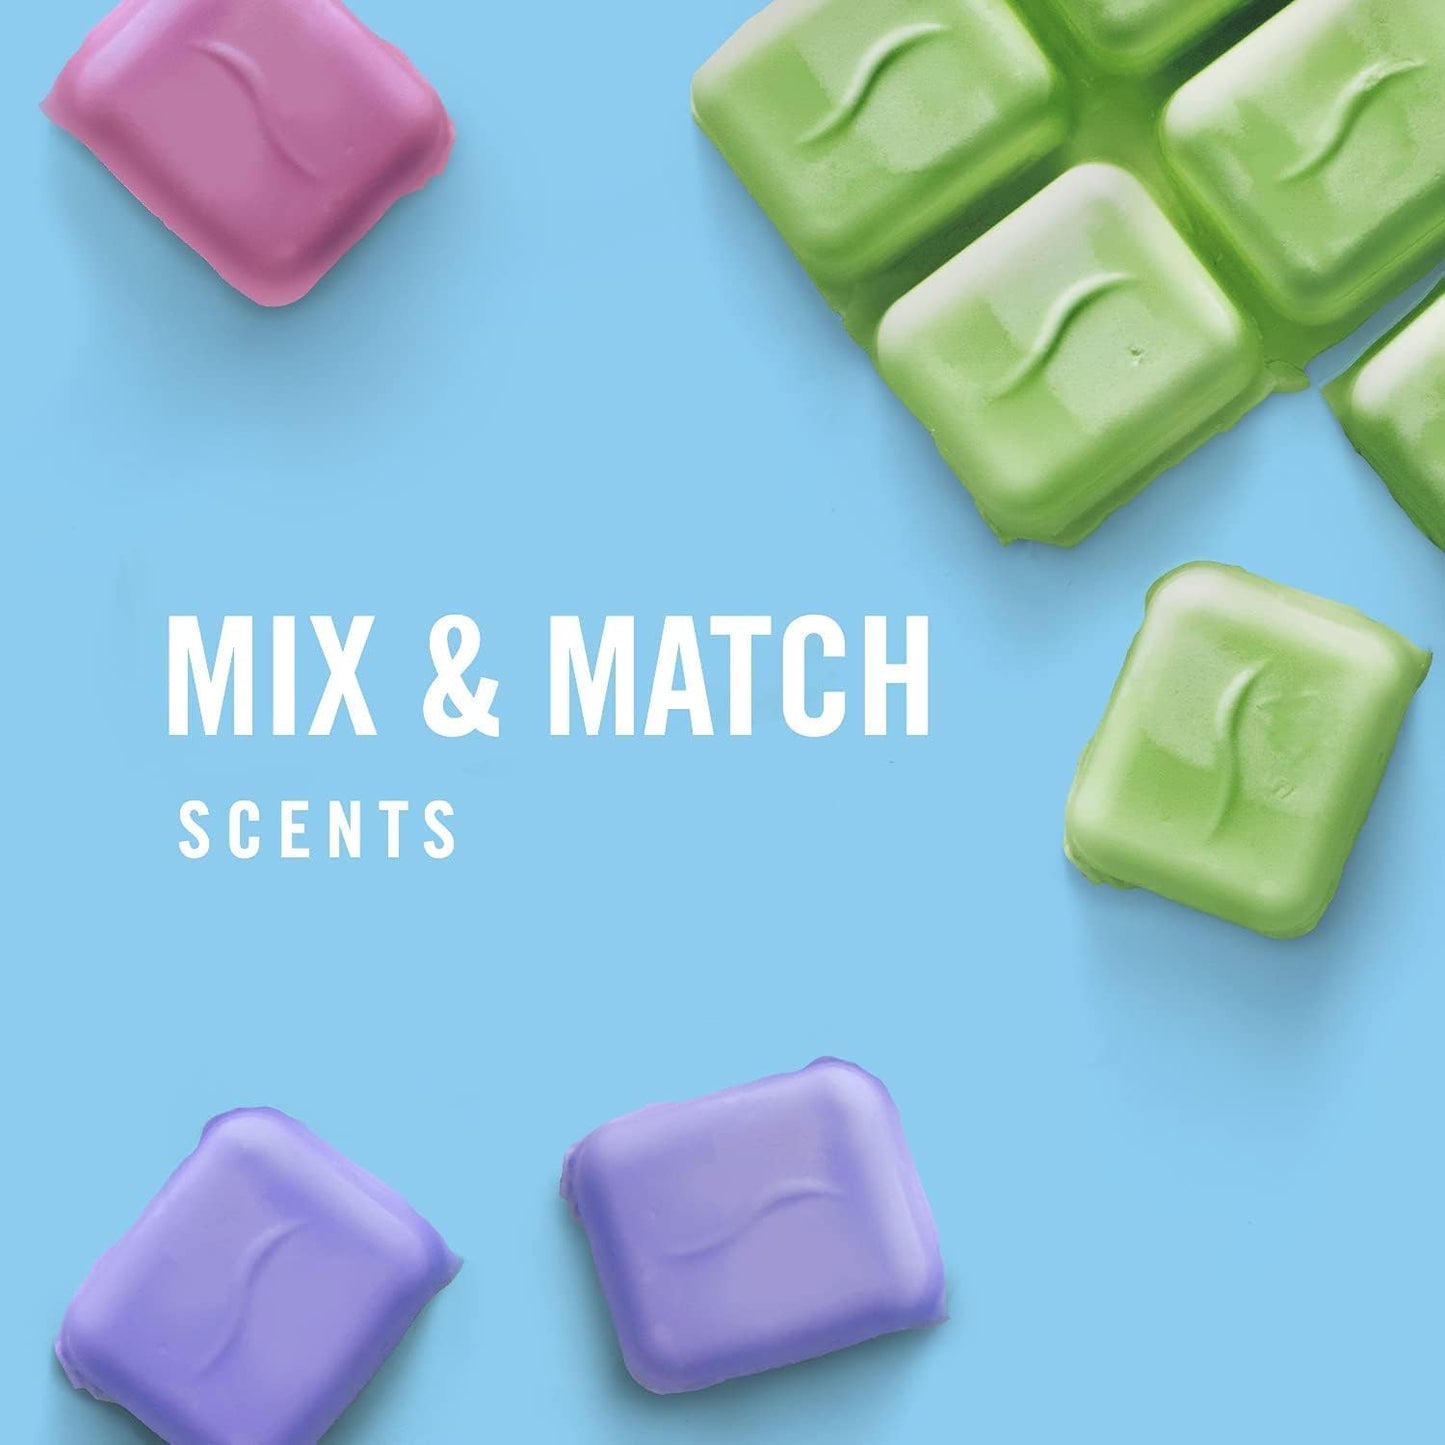 Wax Melts, Wax Melt Warmer Cubes, Wax Warmer Cubes, Gain Original Scent, 6 Packs, 6 Cubes Each, Air Freshener